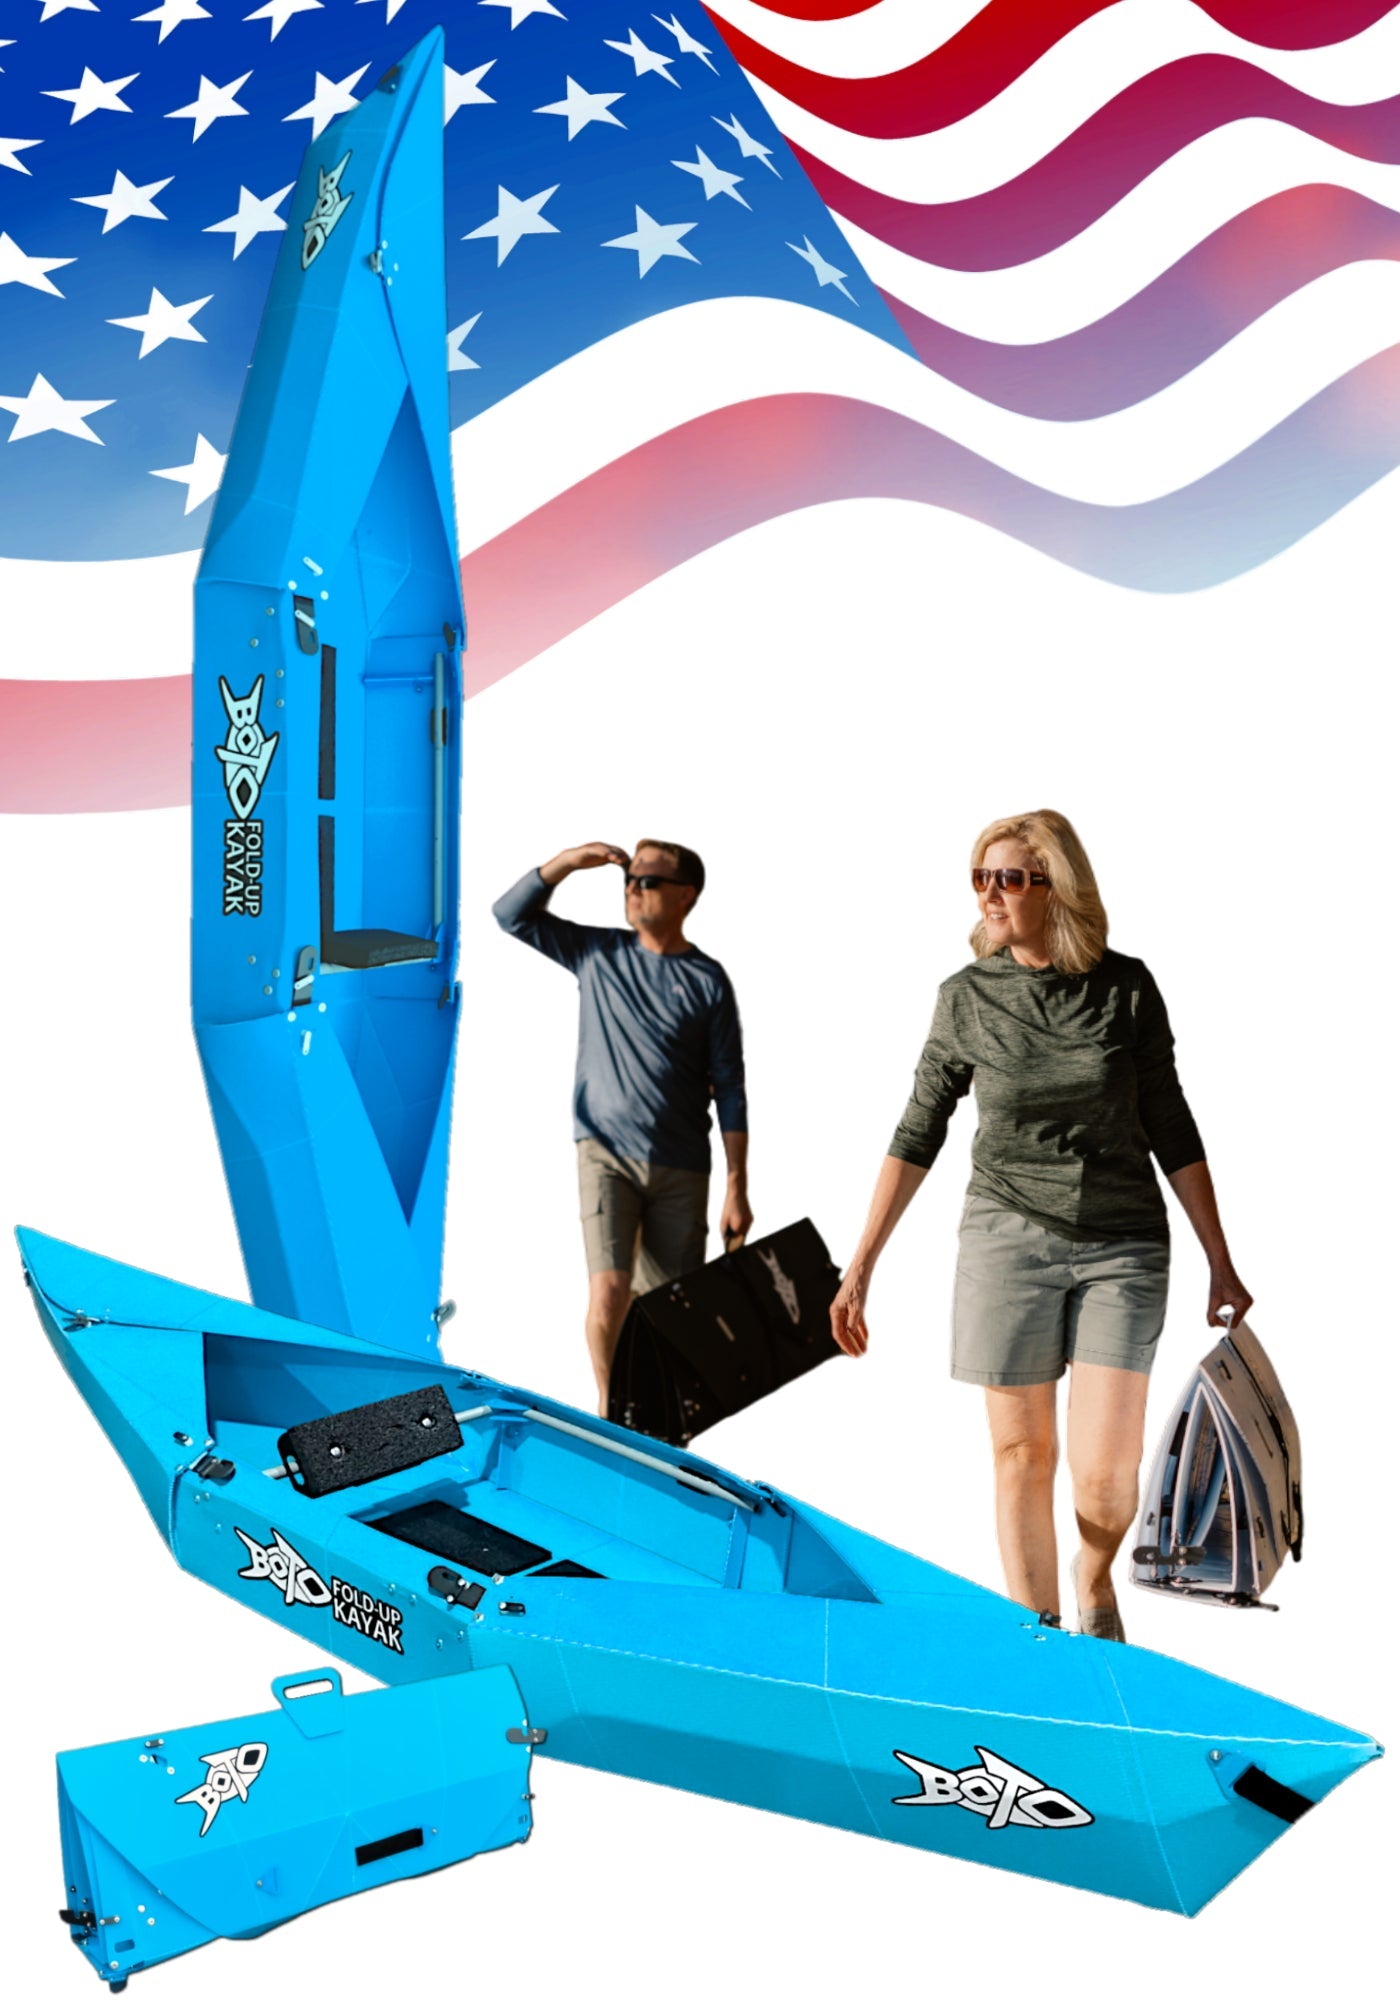 BOTO Ten Pound Fold-up Kayak | 2 minute assembly | Folding Portable Kayak